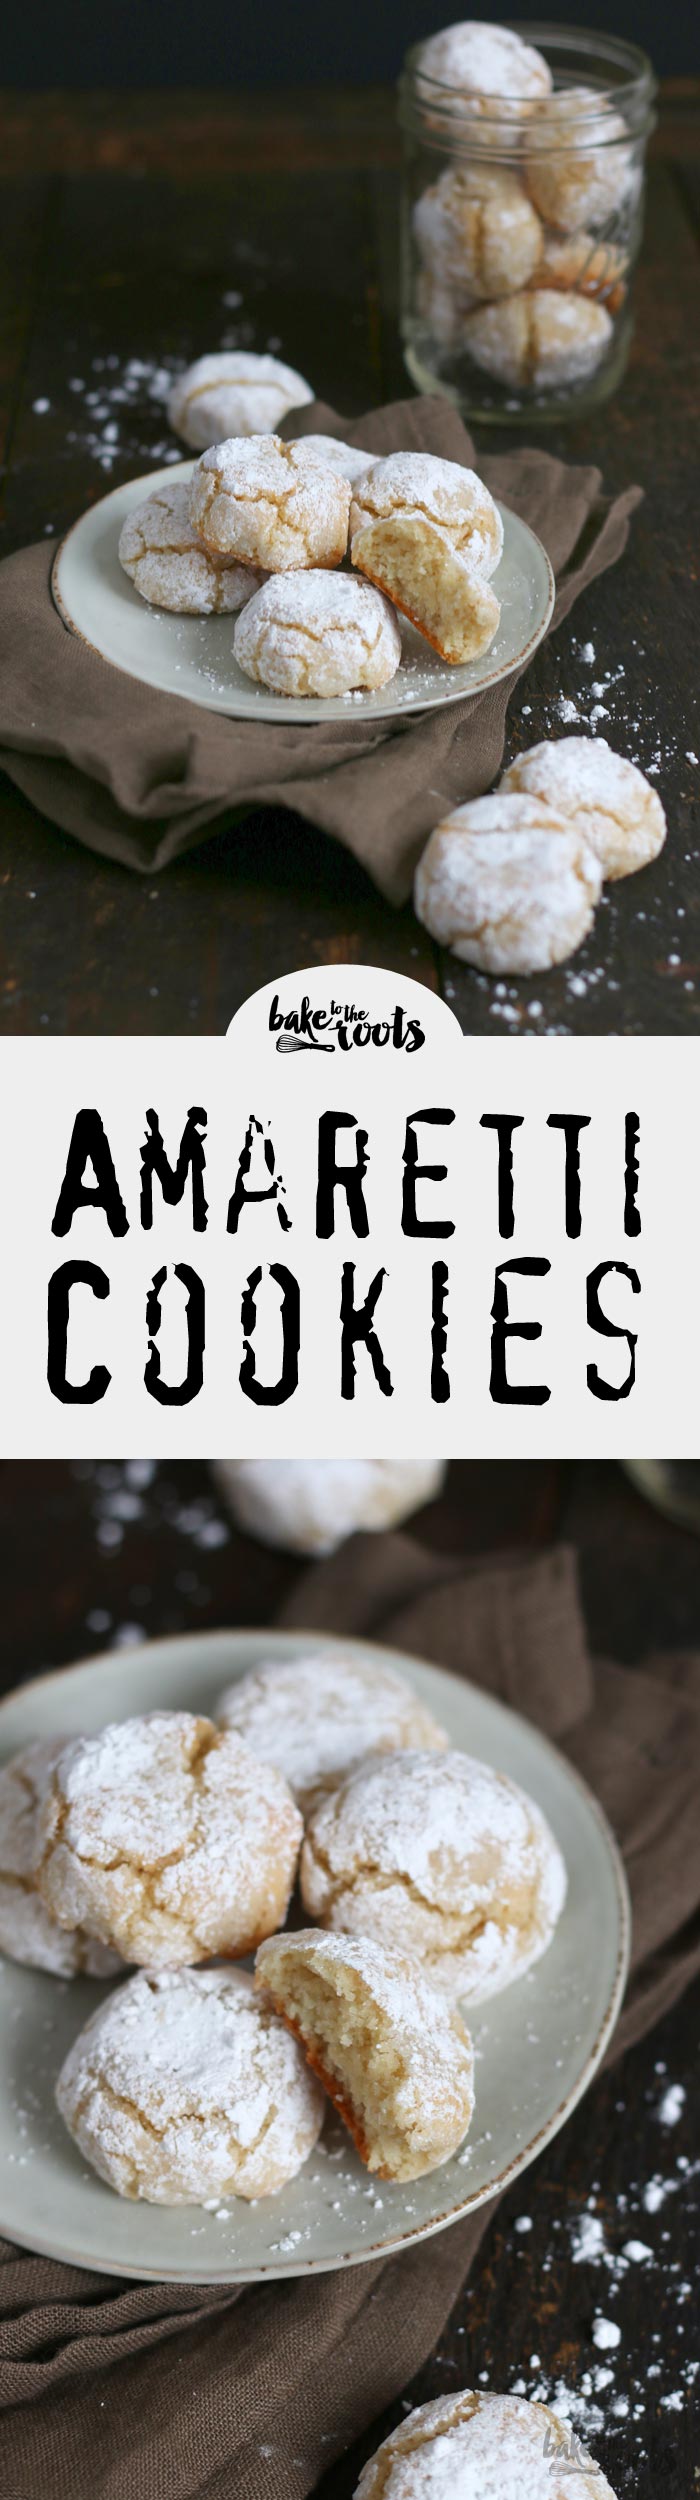 Leckere Amaretti ohne Mehl gebacken | Bake to the roots